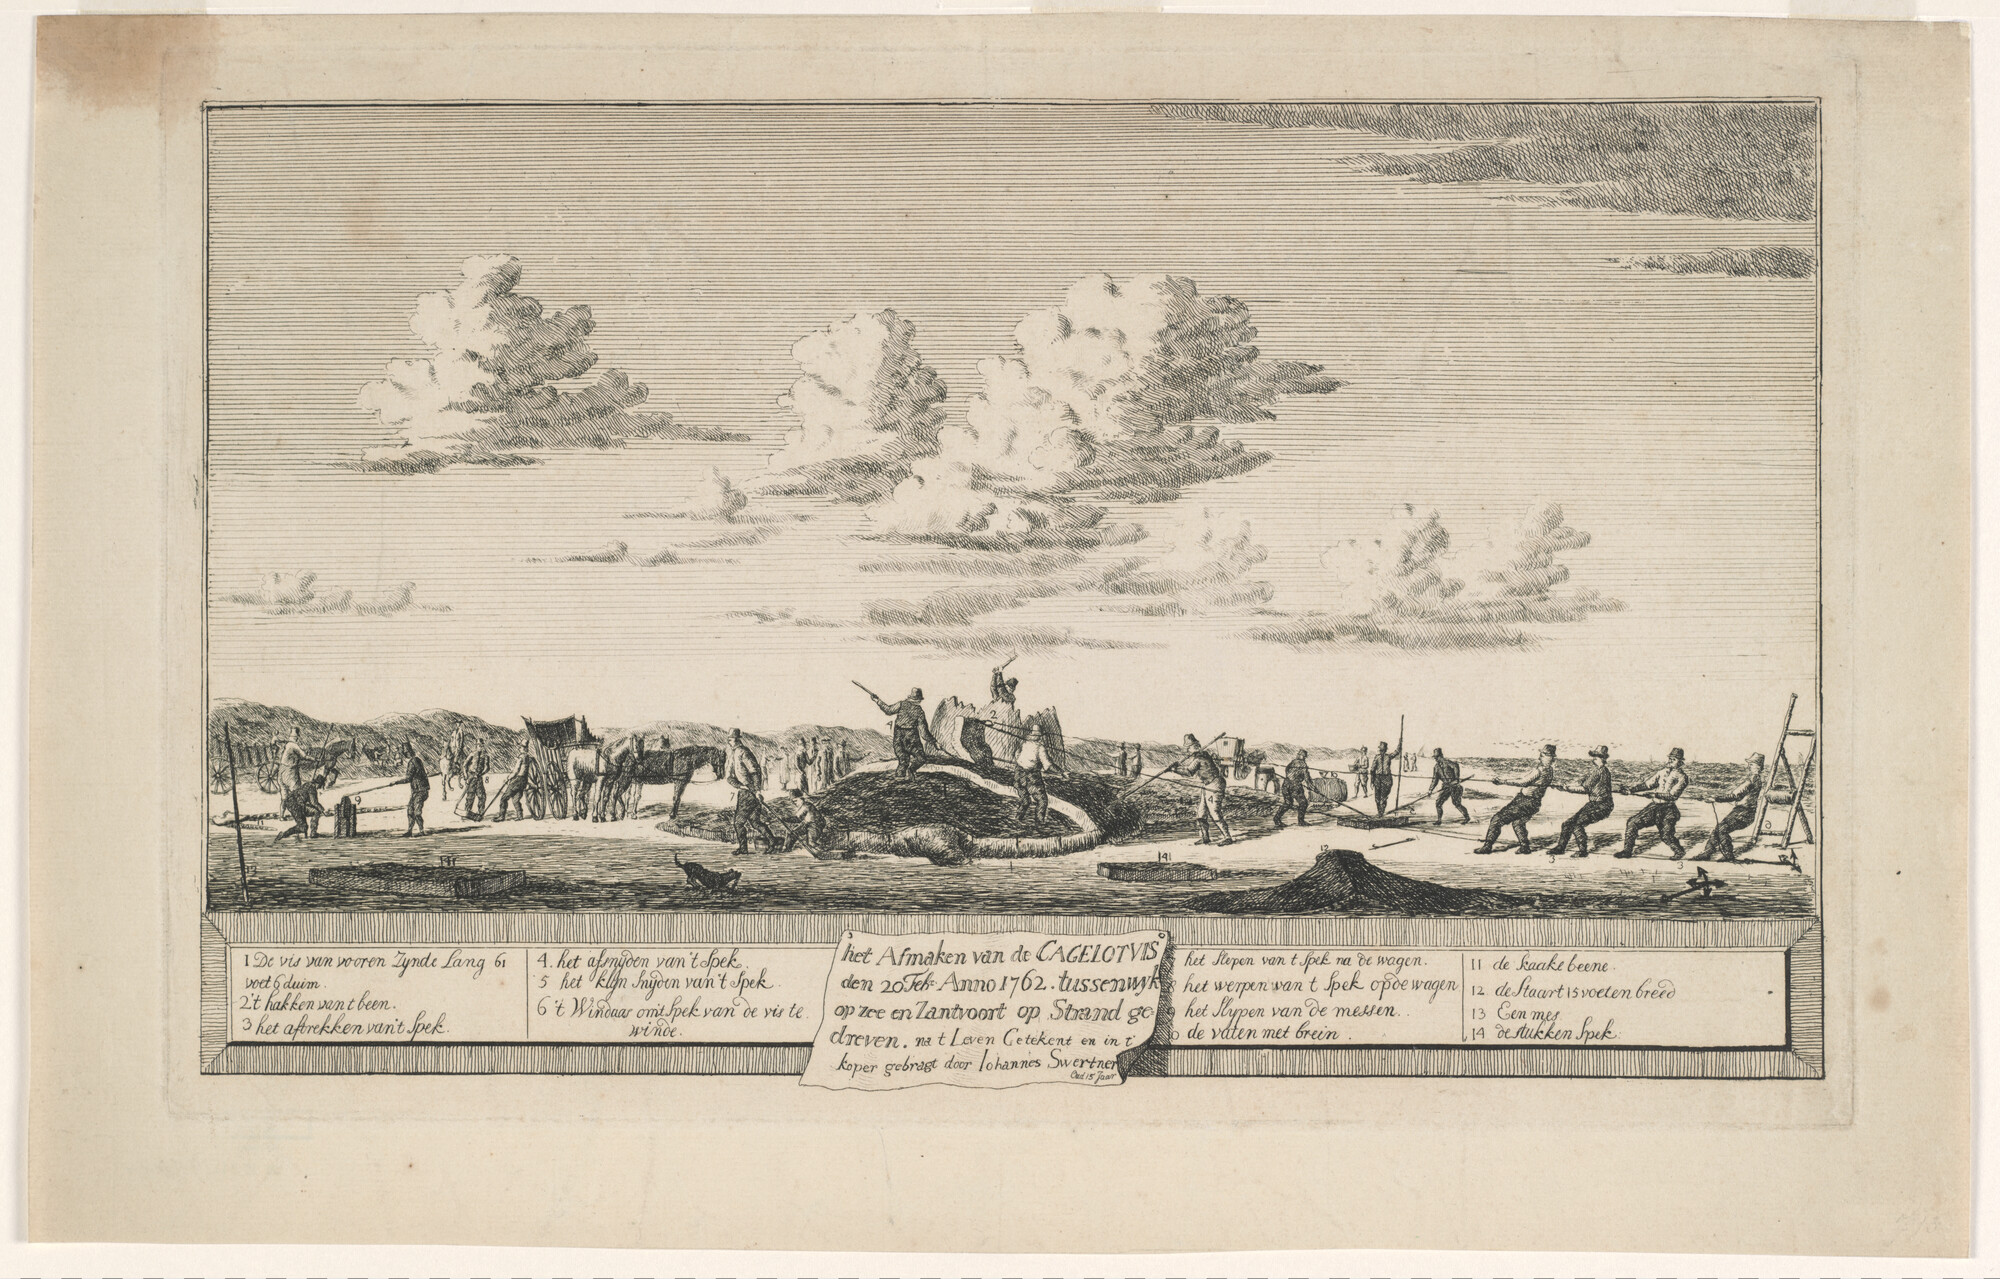 2012.1573; Het afmaken van de Cagelotvis den 20e februari Anno 1762. tussen Wijk op Zee en Zantvoort op Strand gedreven; prent